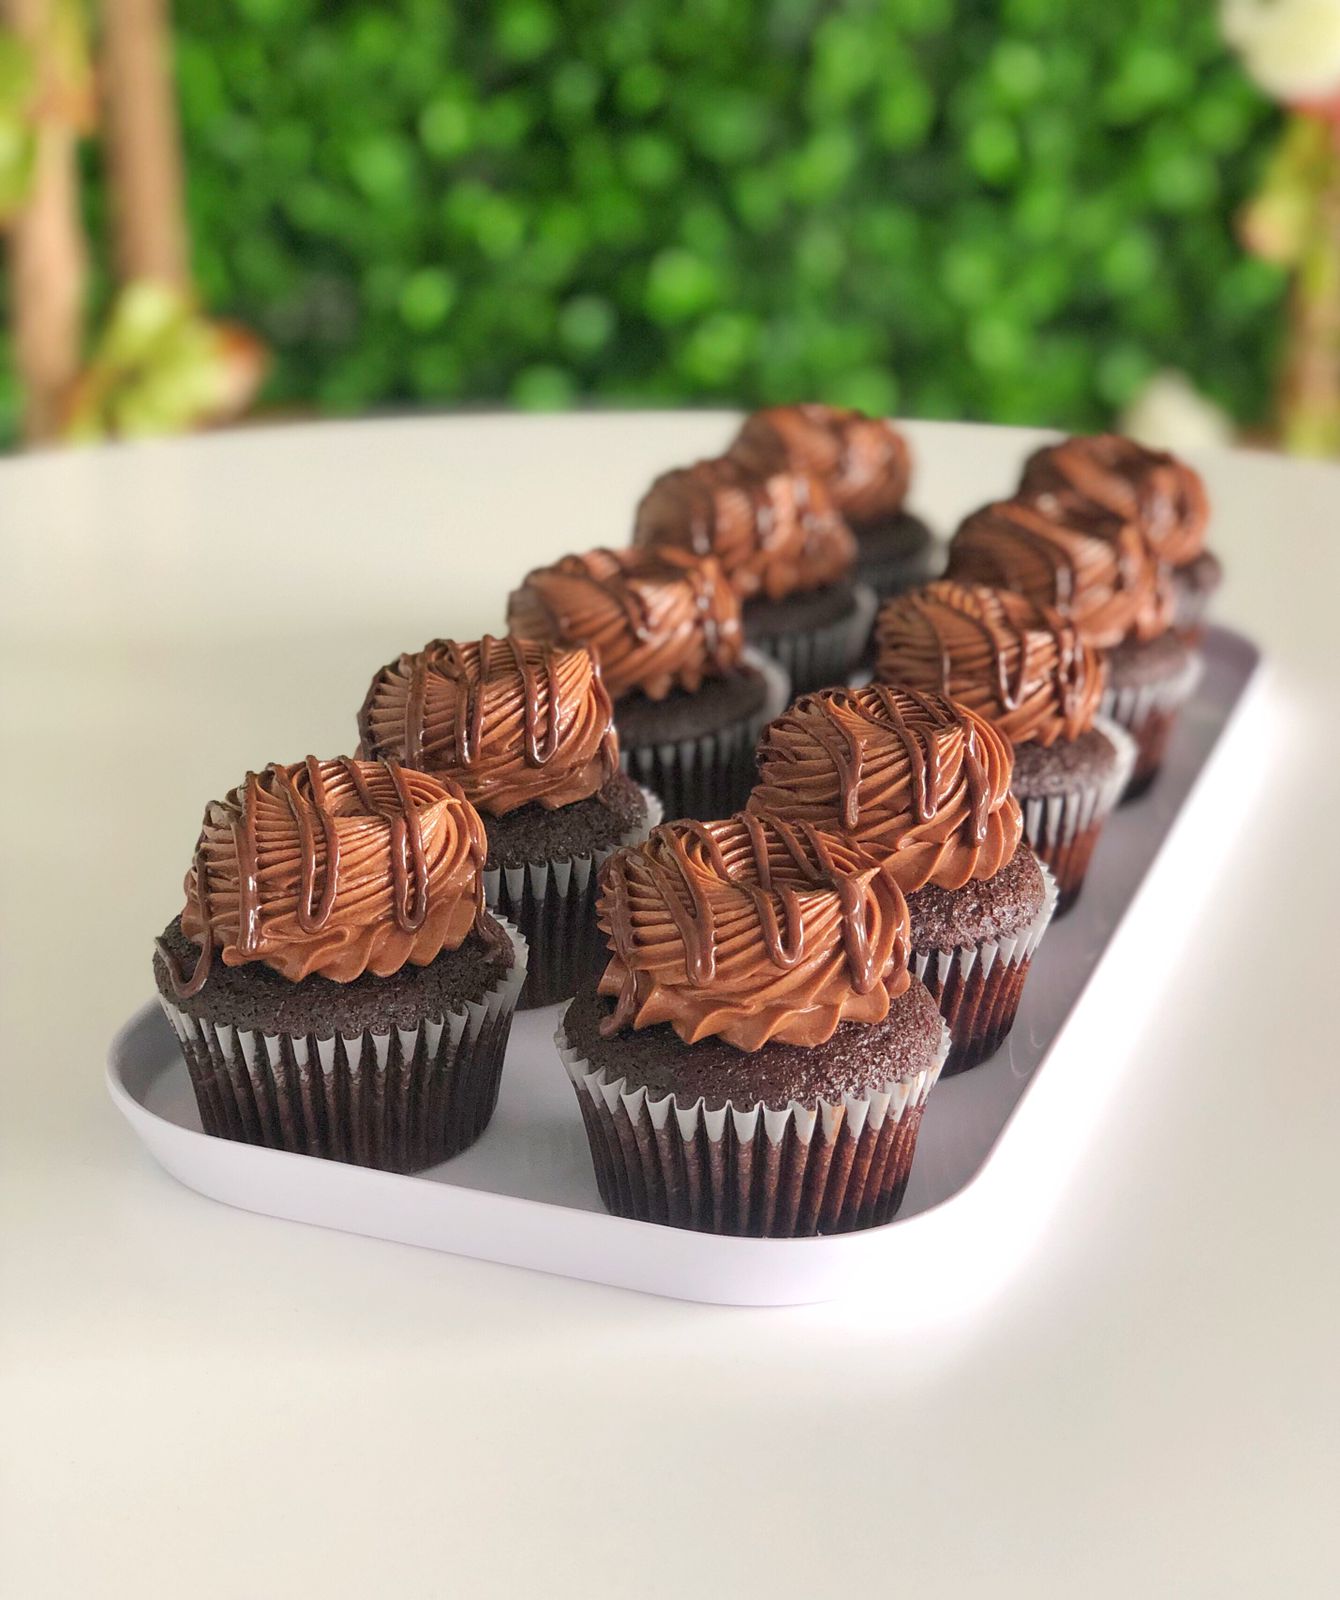 Triple chocolate cupcakes